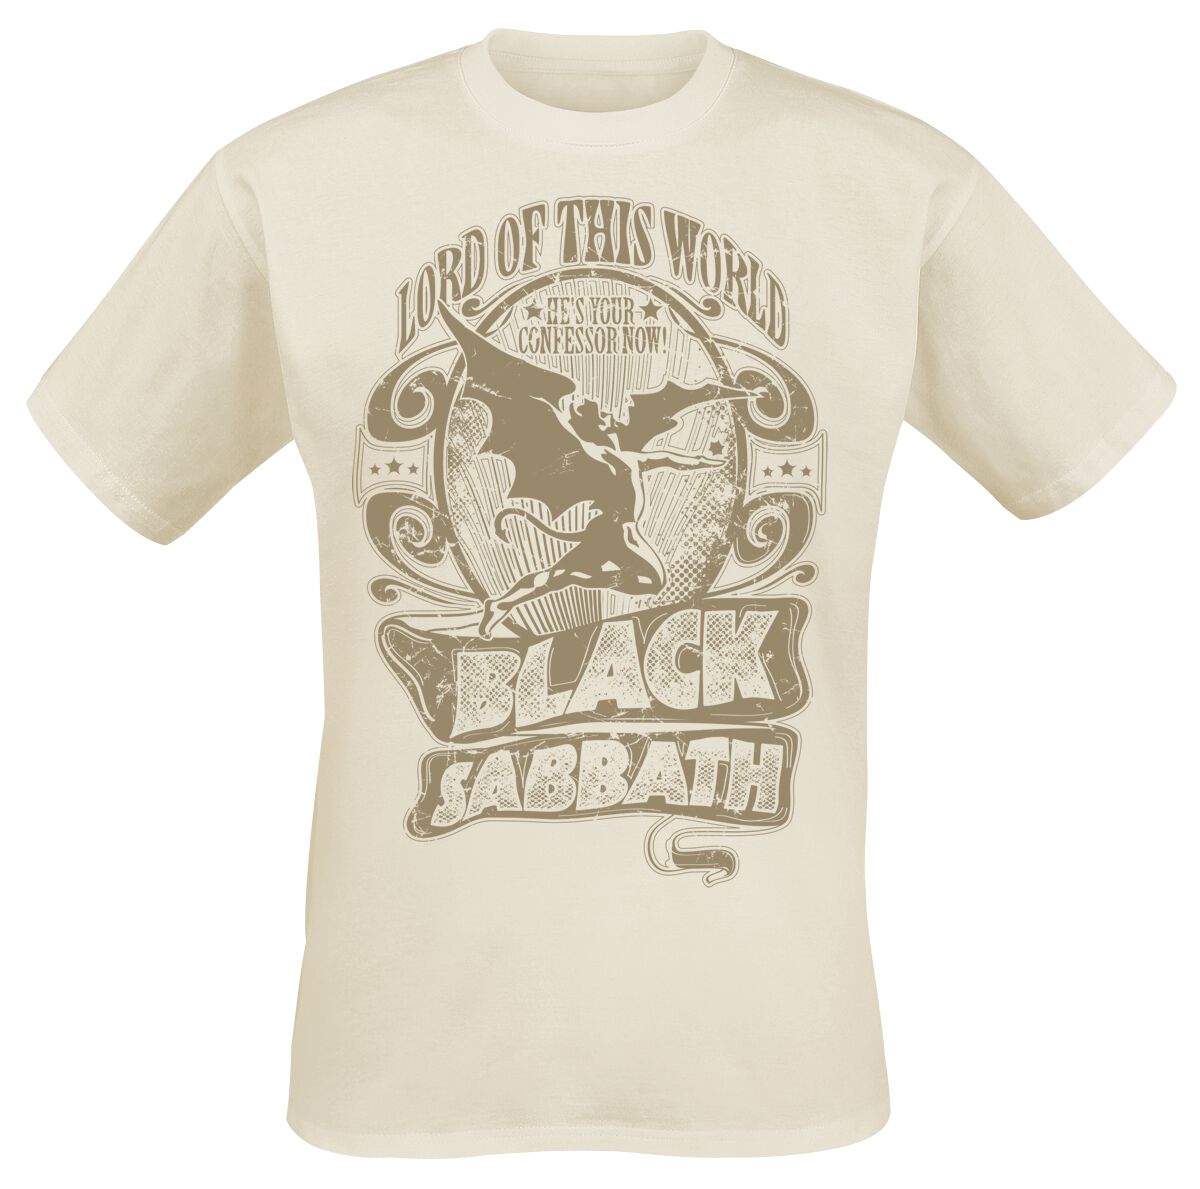 Black Sabbath T-Shirt - Lord Of This World - L bis XXL - für Männer - Größe XL - natur  - Lizenziertes Merchandise!